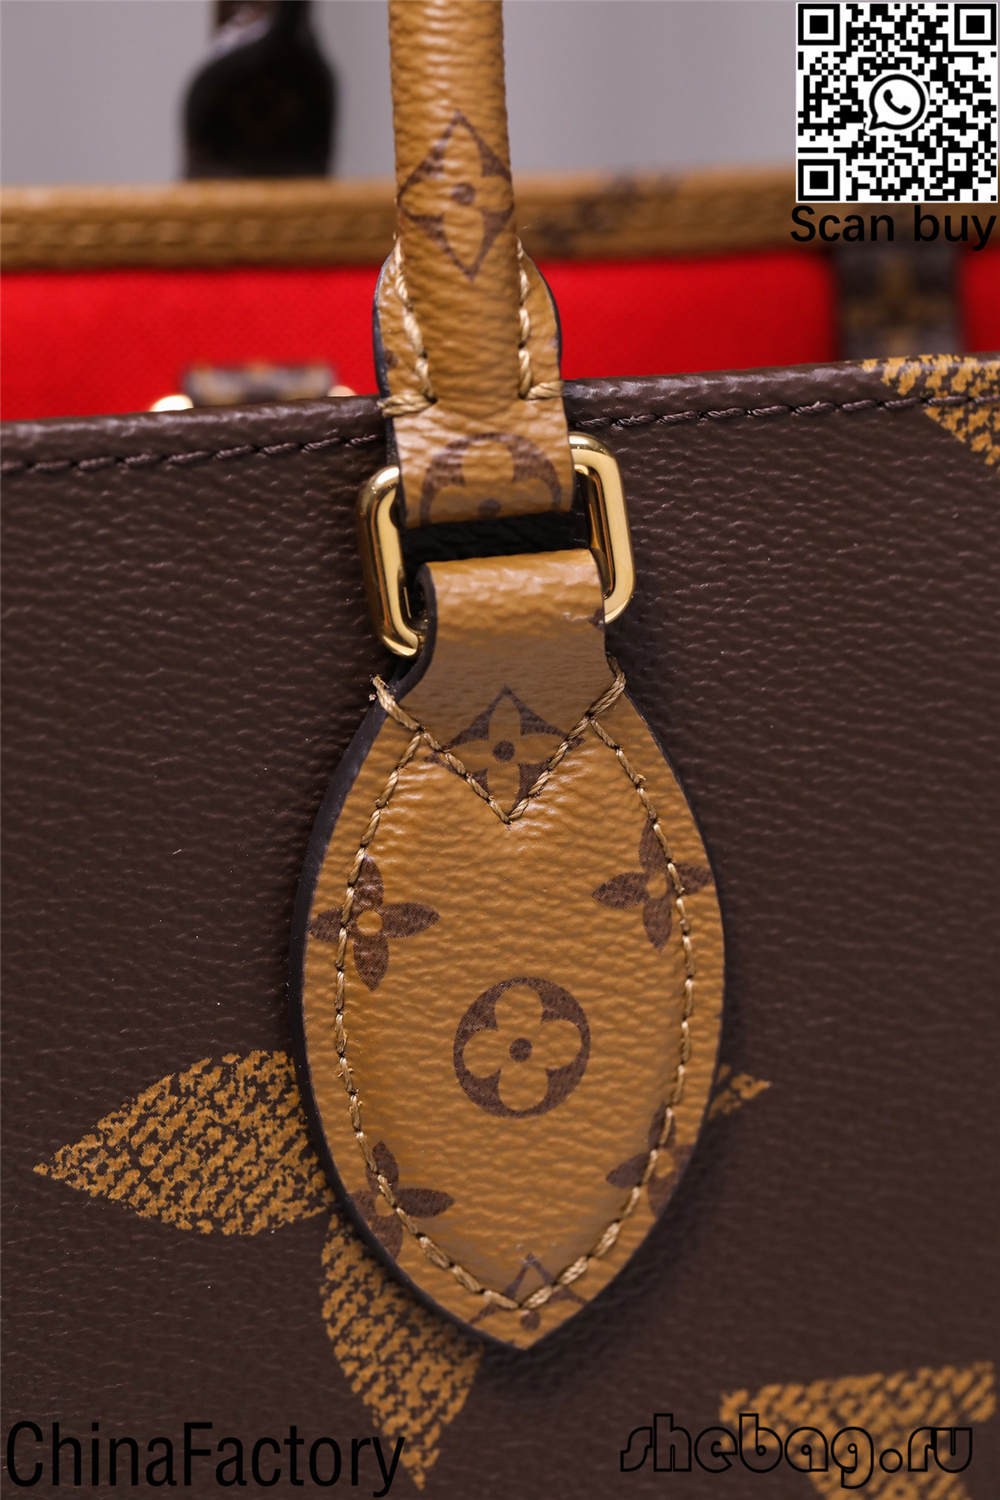 louis vitton replicas bag descrptions e preços (2022 atualizado)-Loja online de bolsa Louis Vuitton falsa de melhor qualidade, bolsa de designer de réplica ru